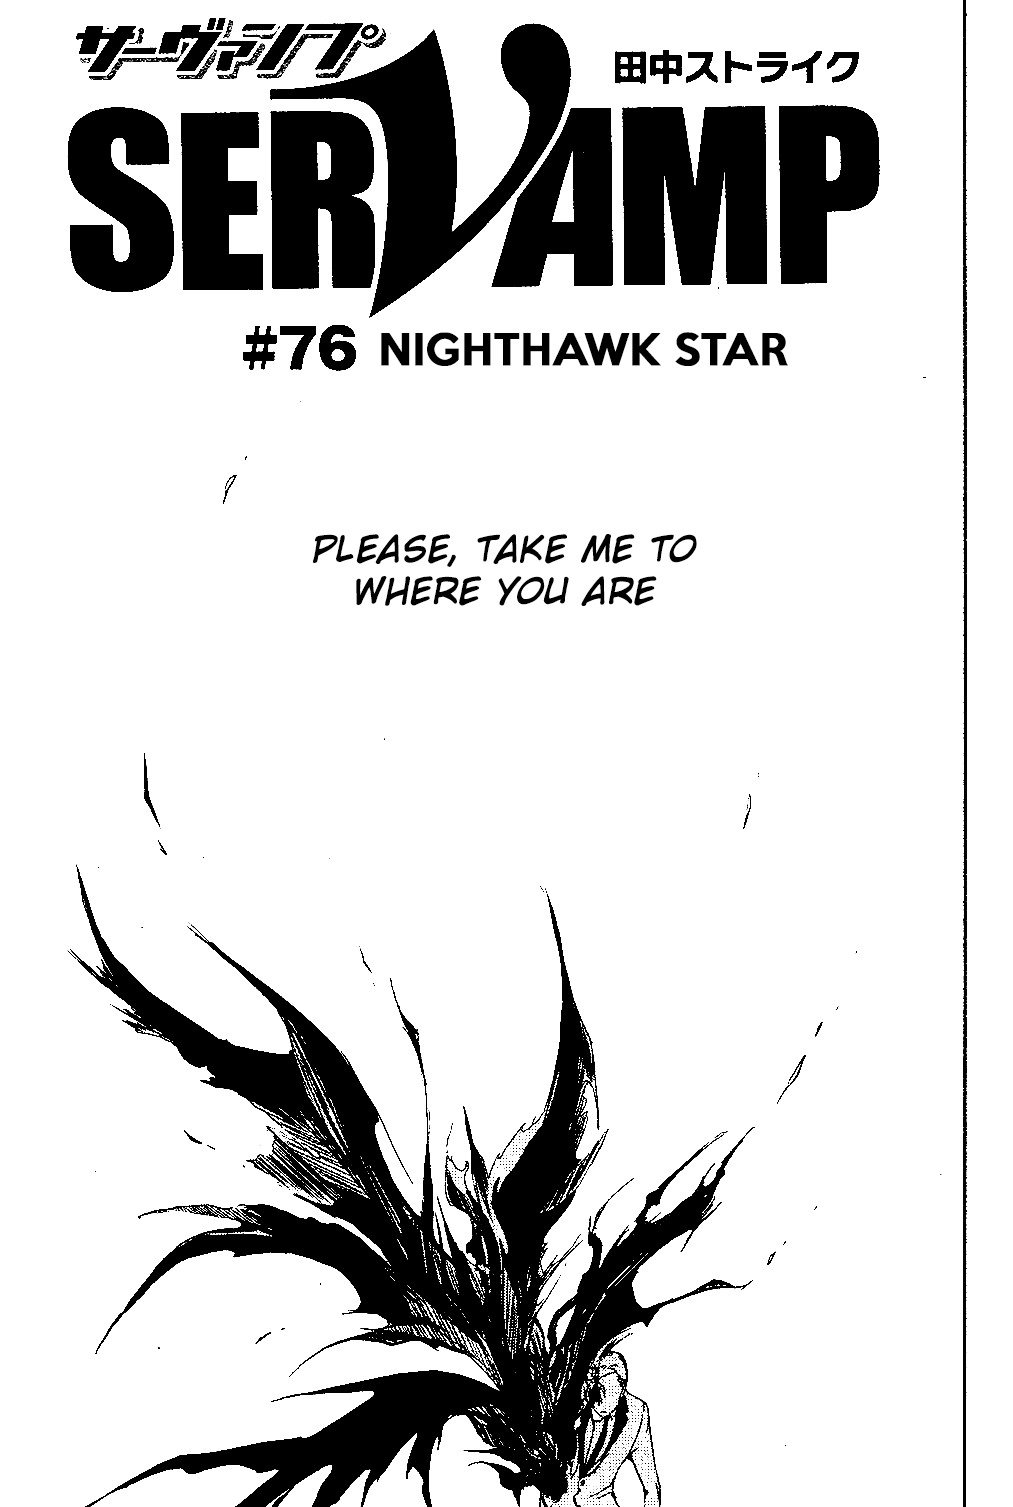 Servamp Vol. 13 Ch. 76 Nighthawk Star